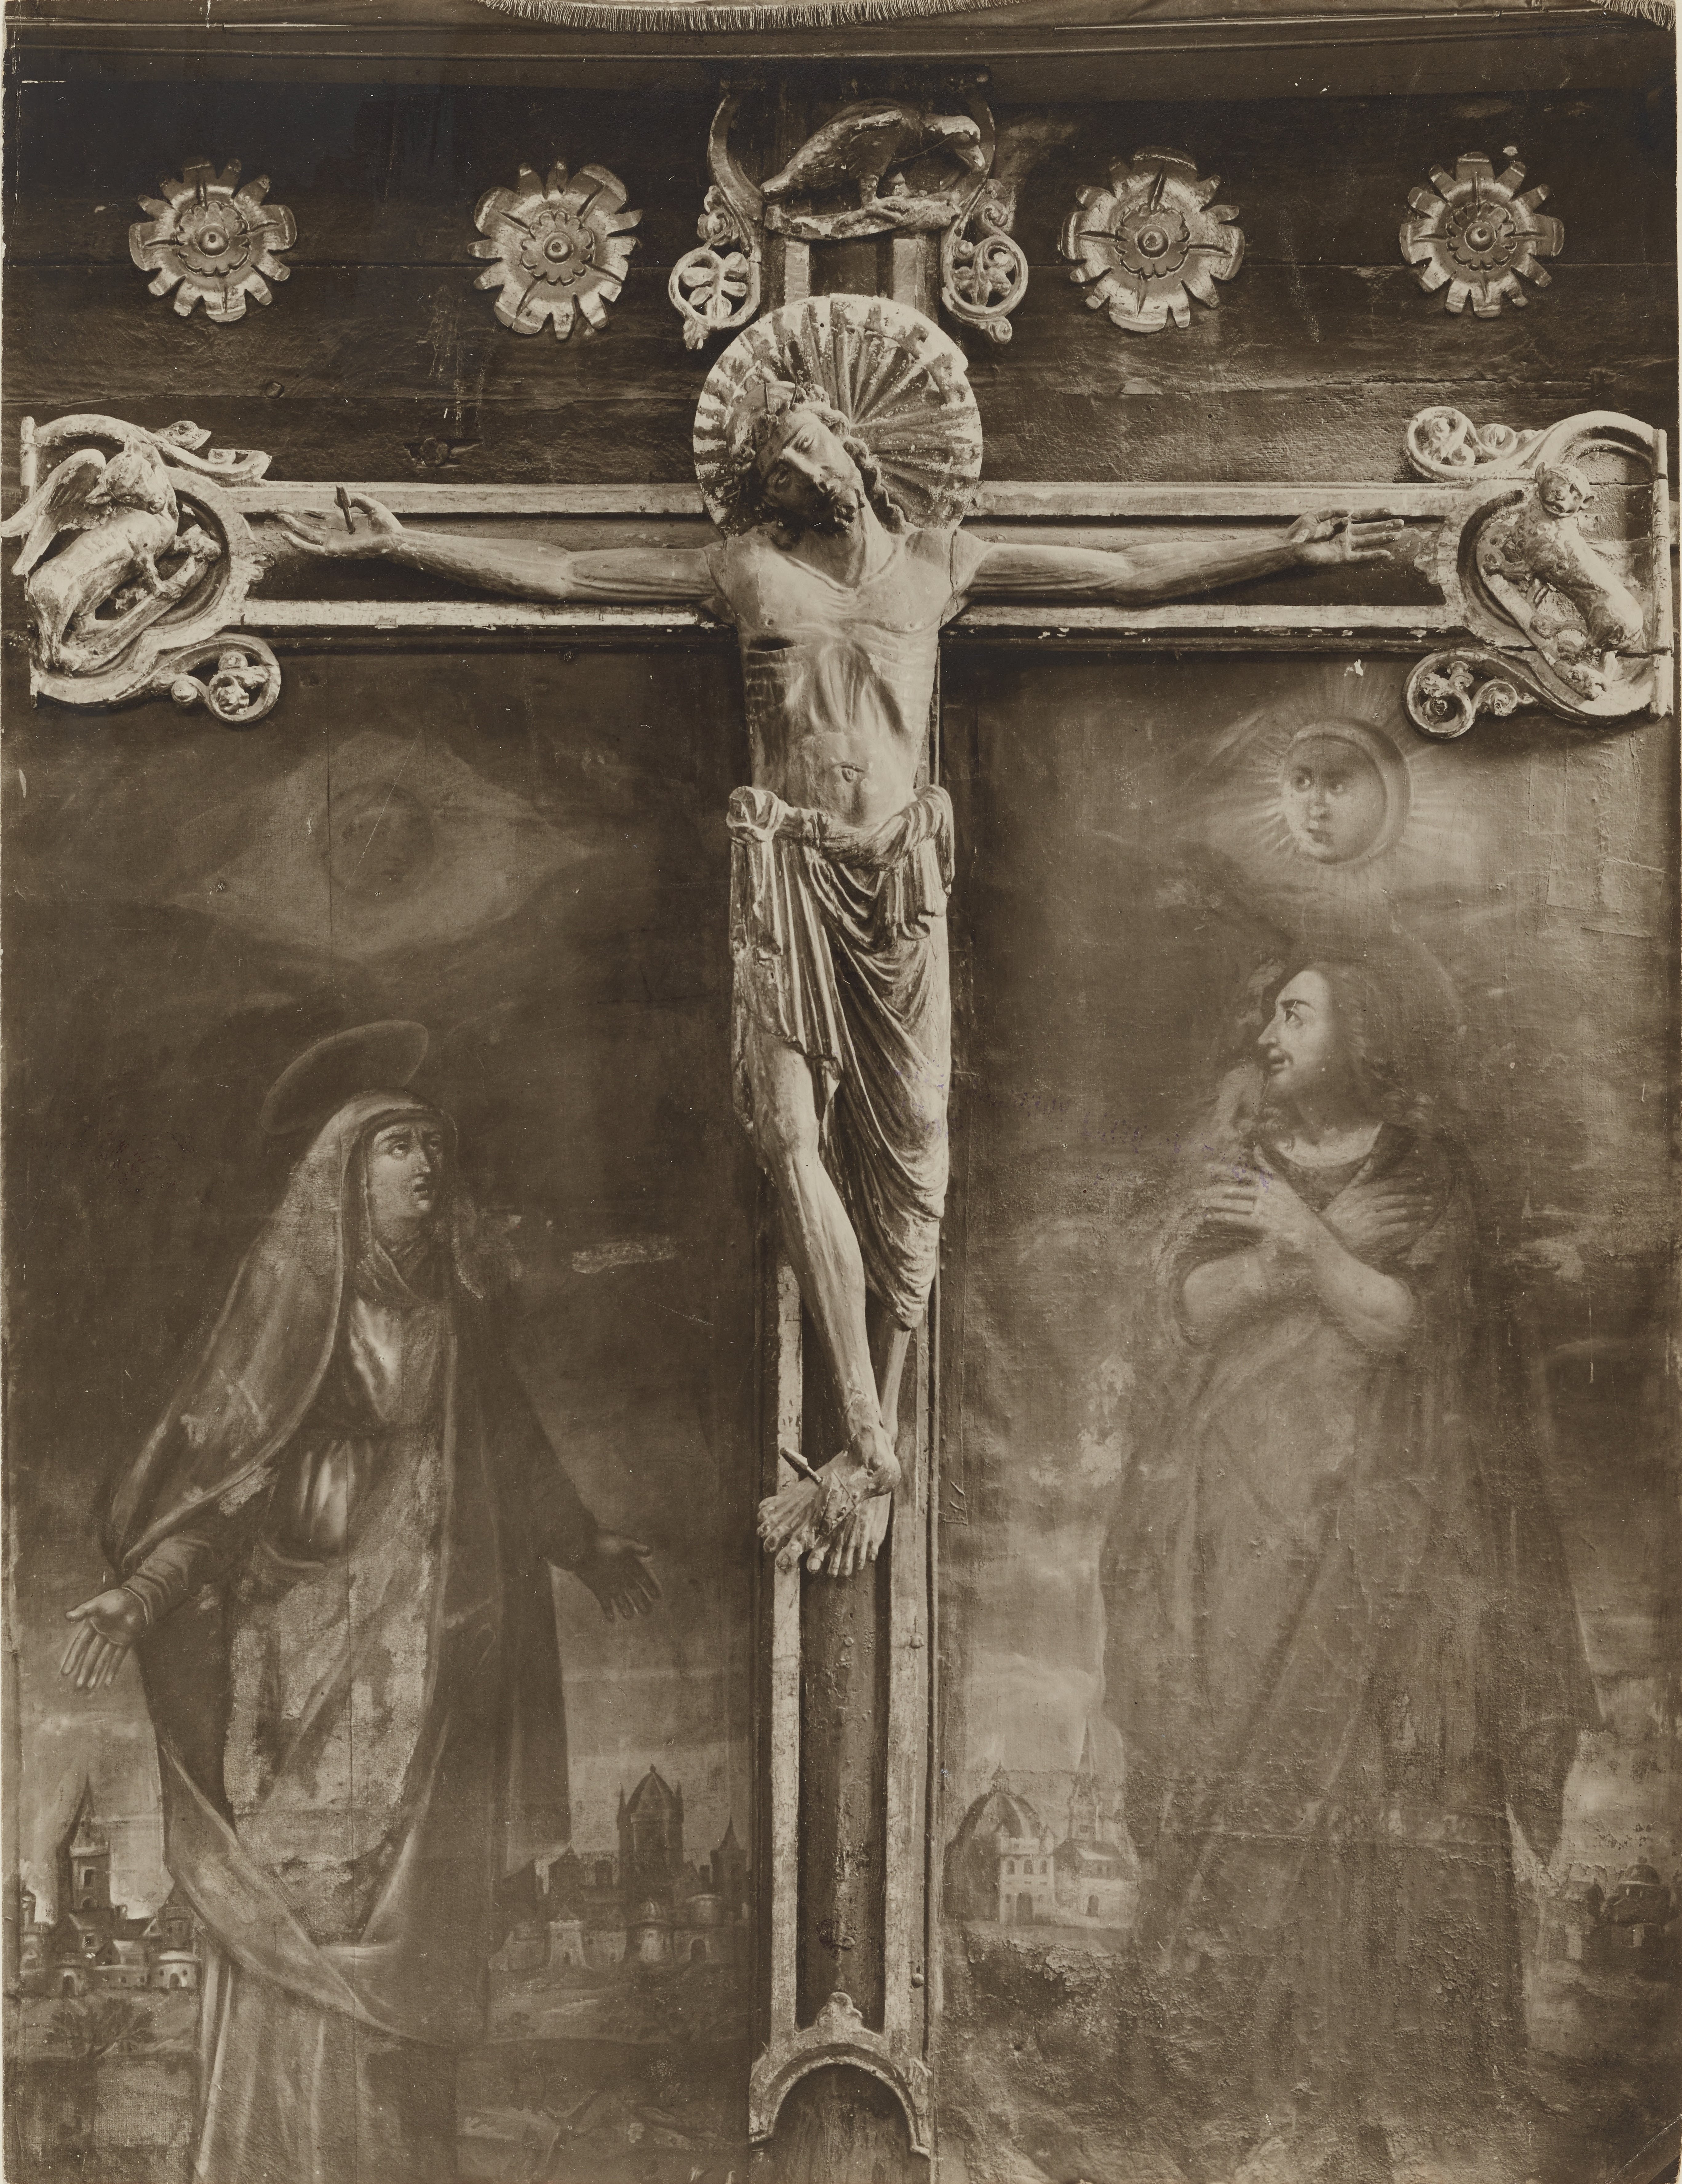 Fotografo non identificato, Brindisi - Chiesa del cristo, crocefisso tra la Madonna e S. Giovanni, 1901-1925, gelatina ai sali d'argento,MPI141575